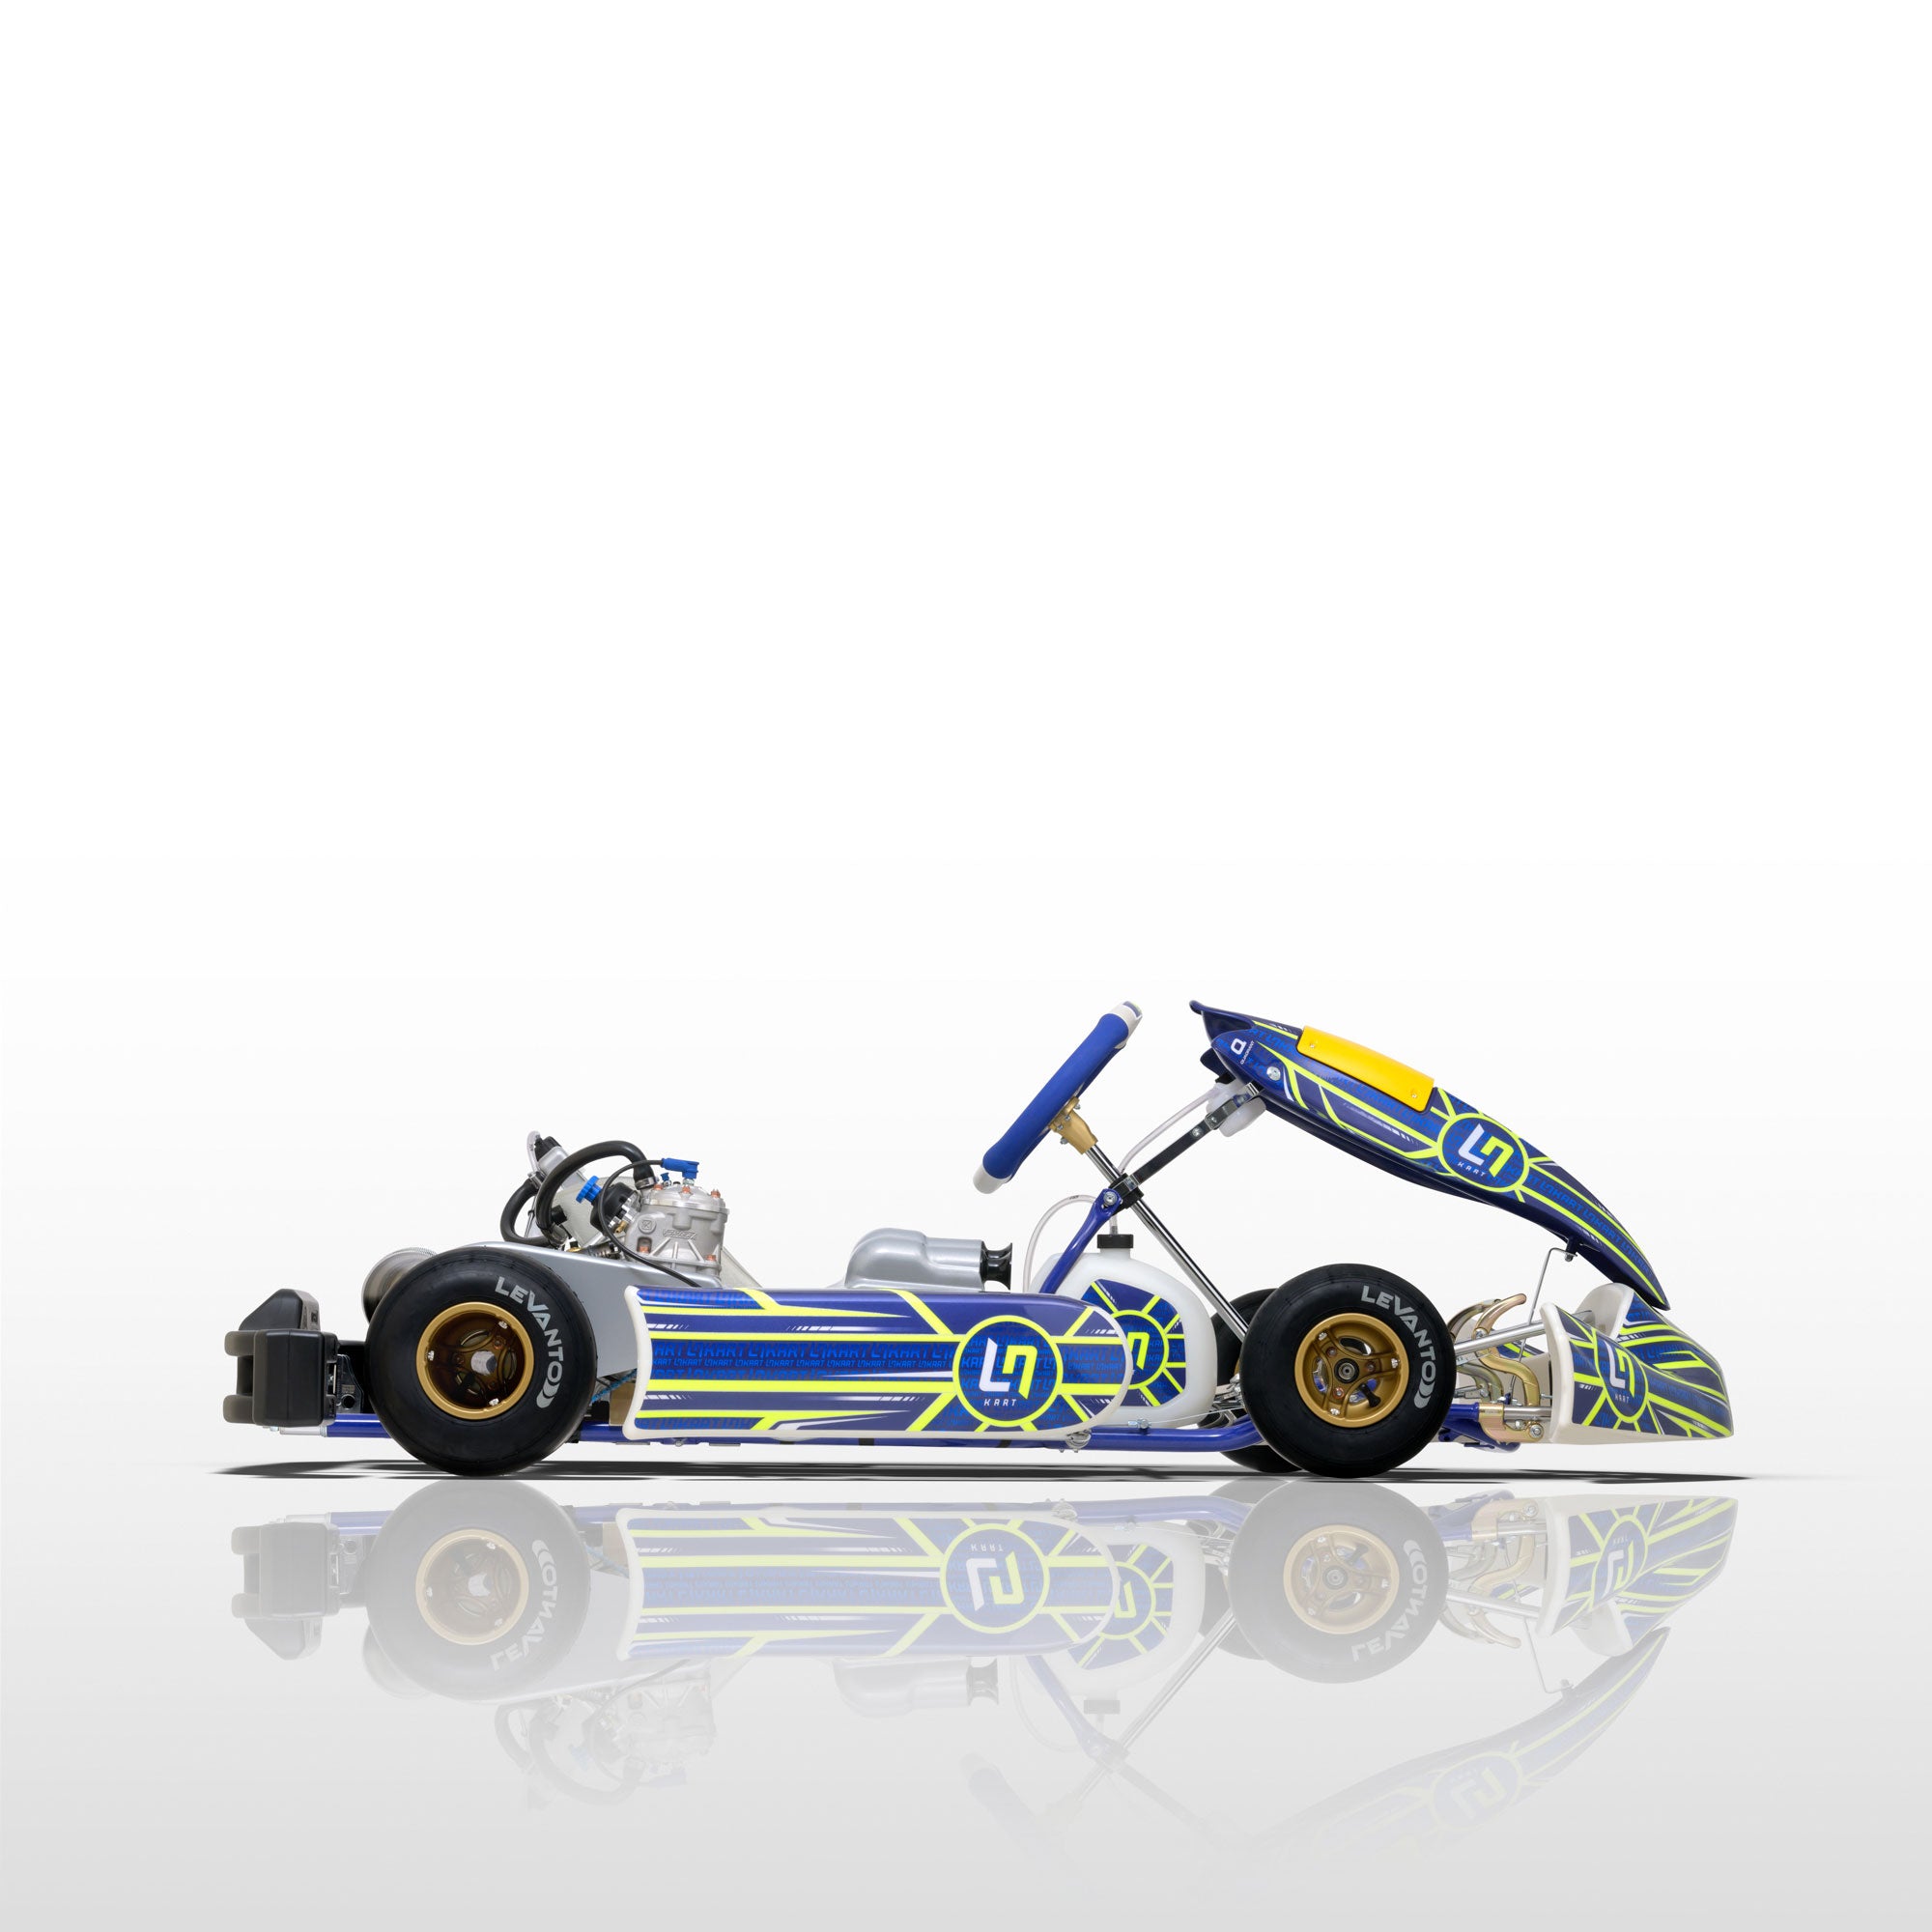 LN Racing Kart Four